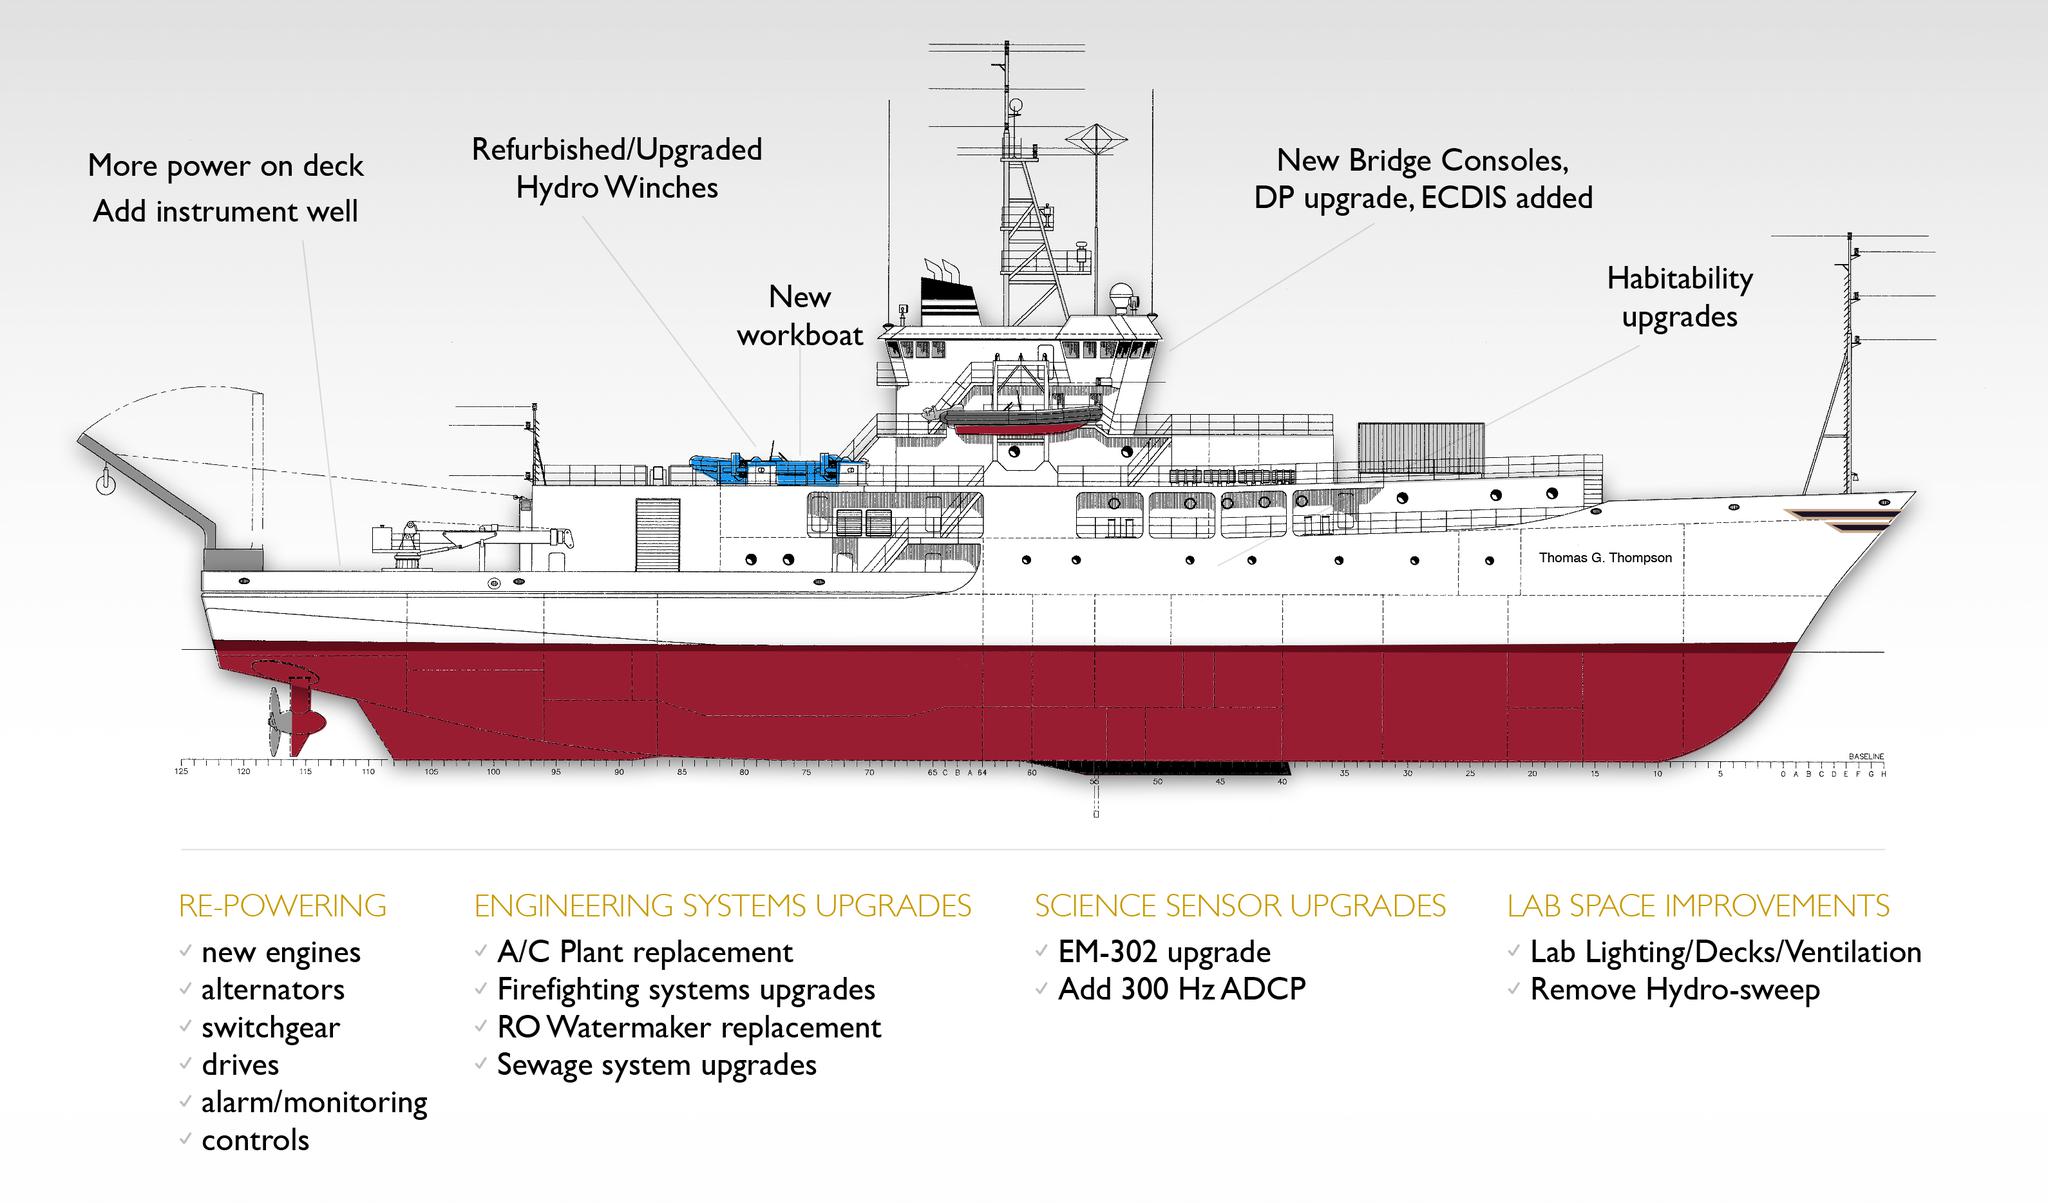 华盛顿大学海洋学院网站上对“汤普森”的介绍，可见现代化改进之后的该船有了很多新设备